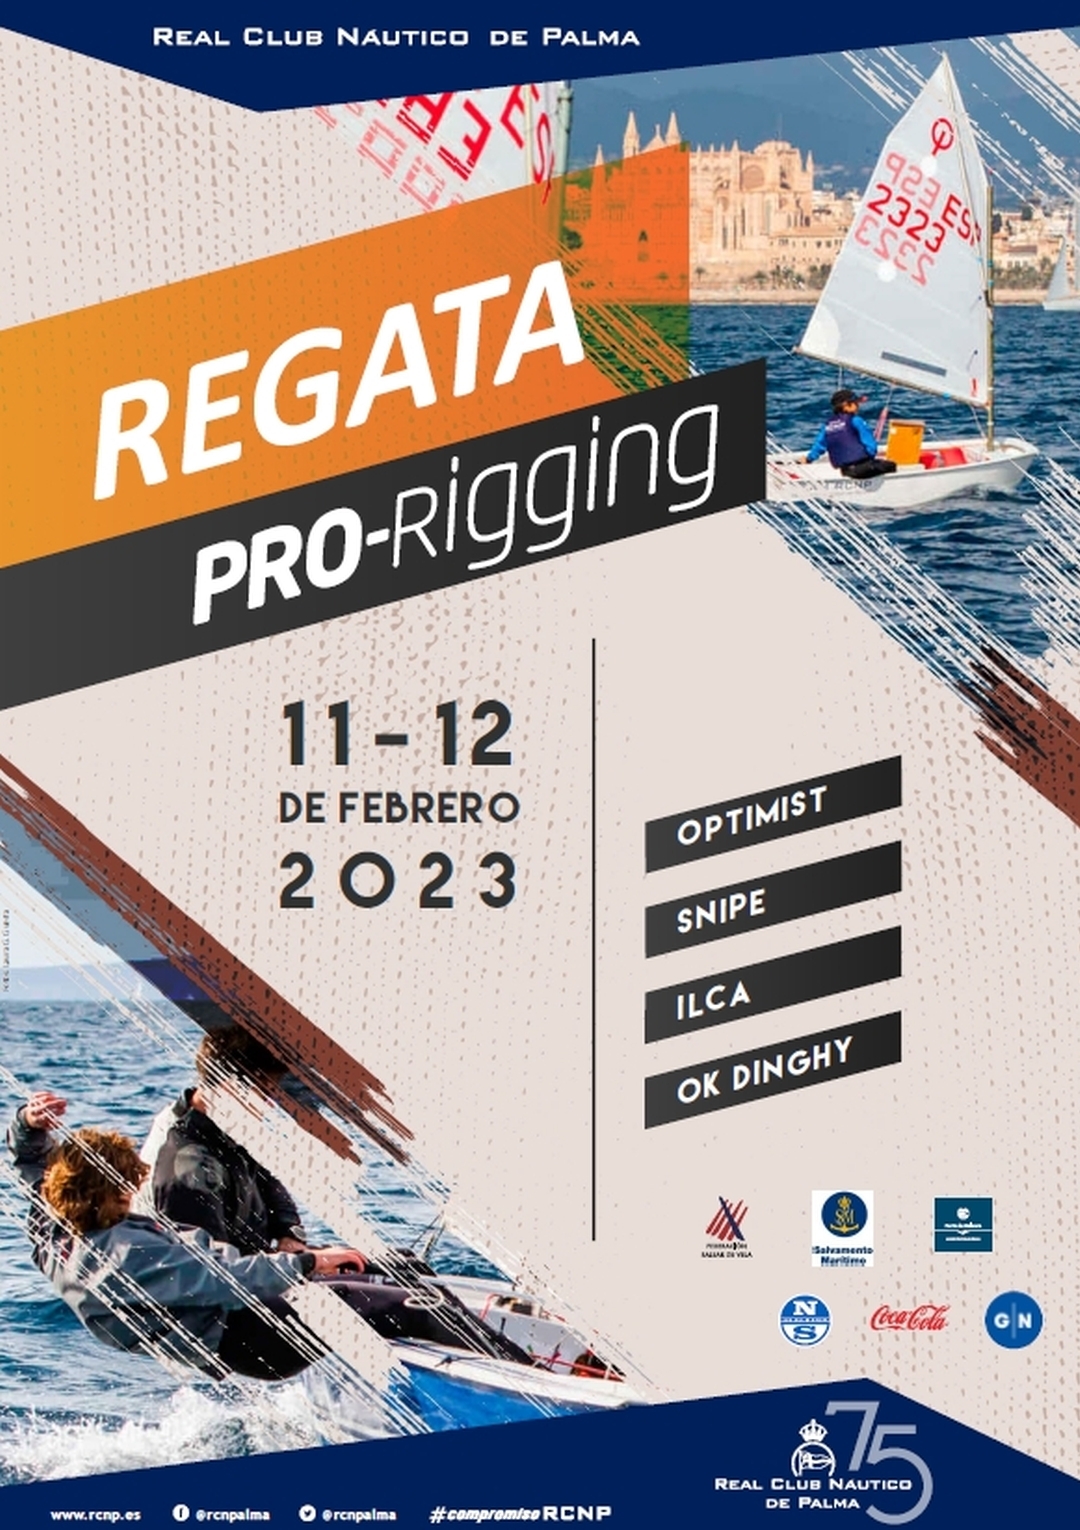 Regata Pro-Rigging 2023:  